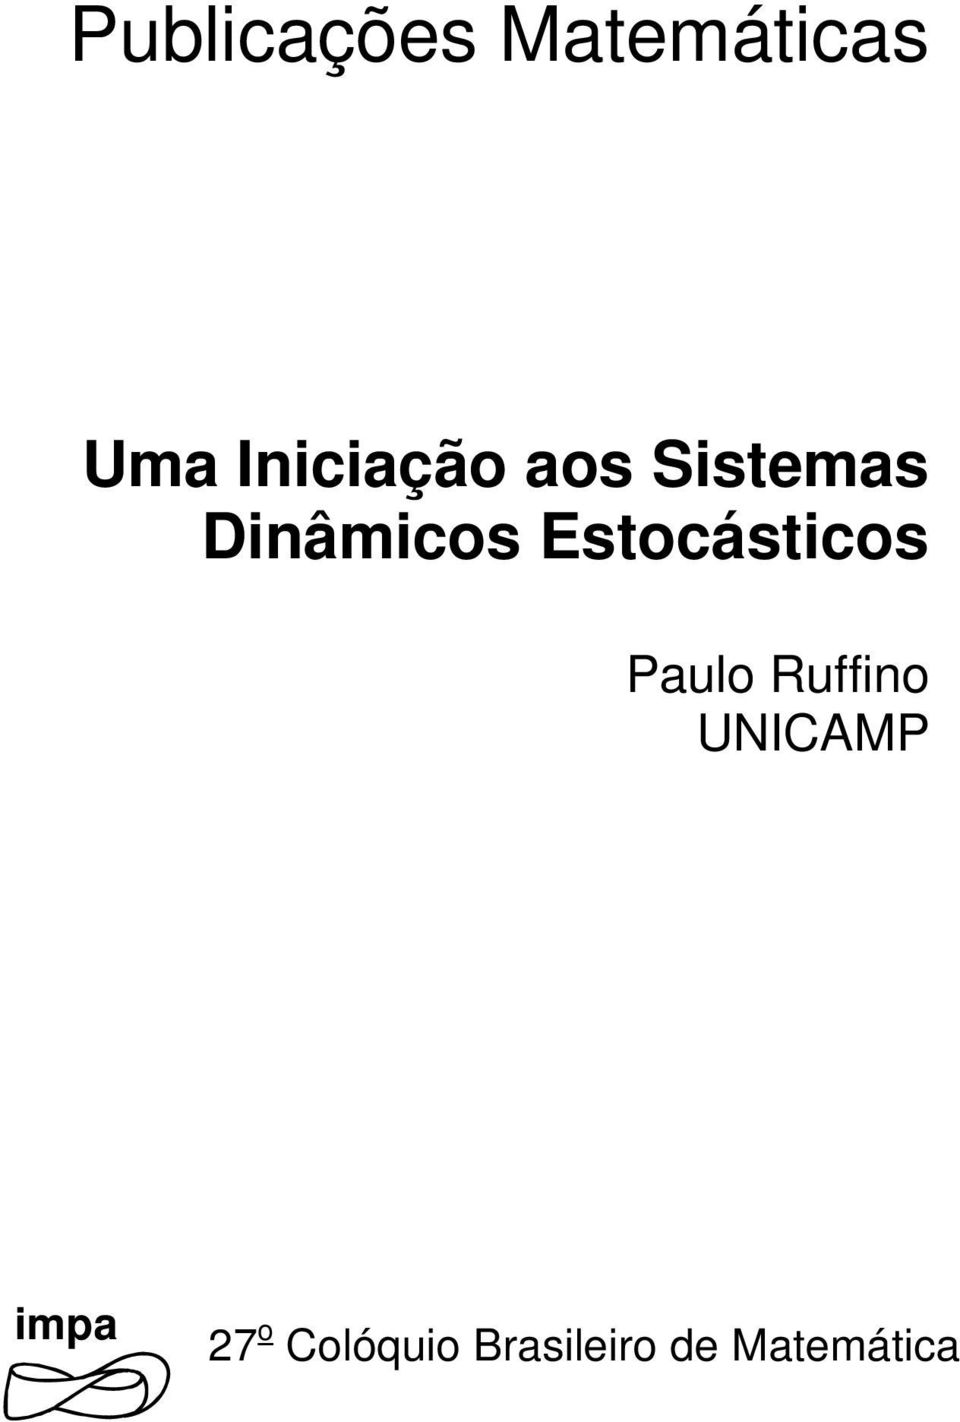 Estocásticos Paulo Ruffino UNICAMP